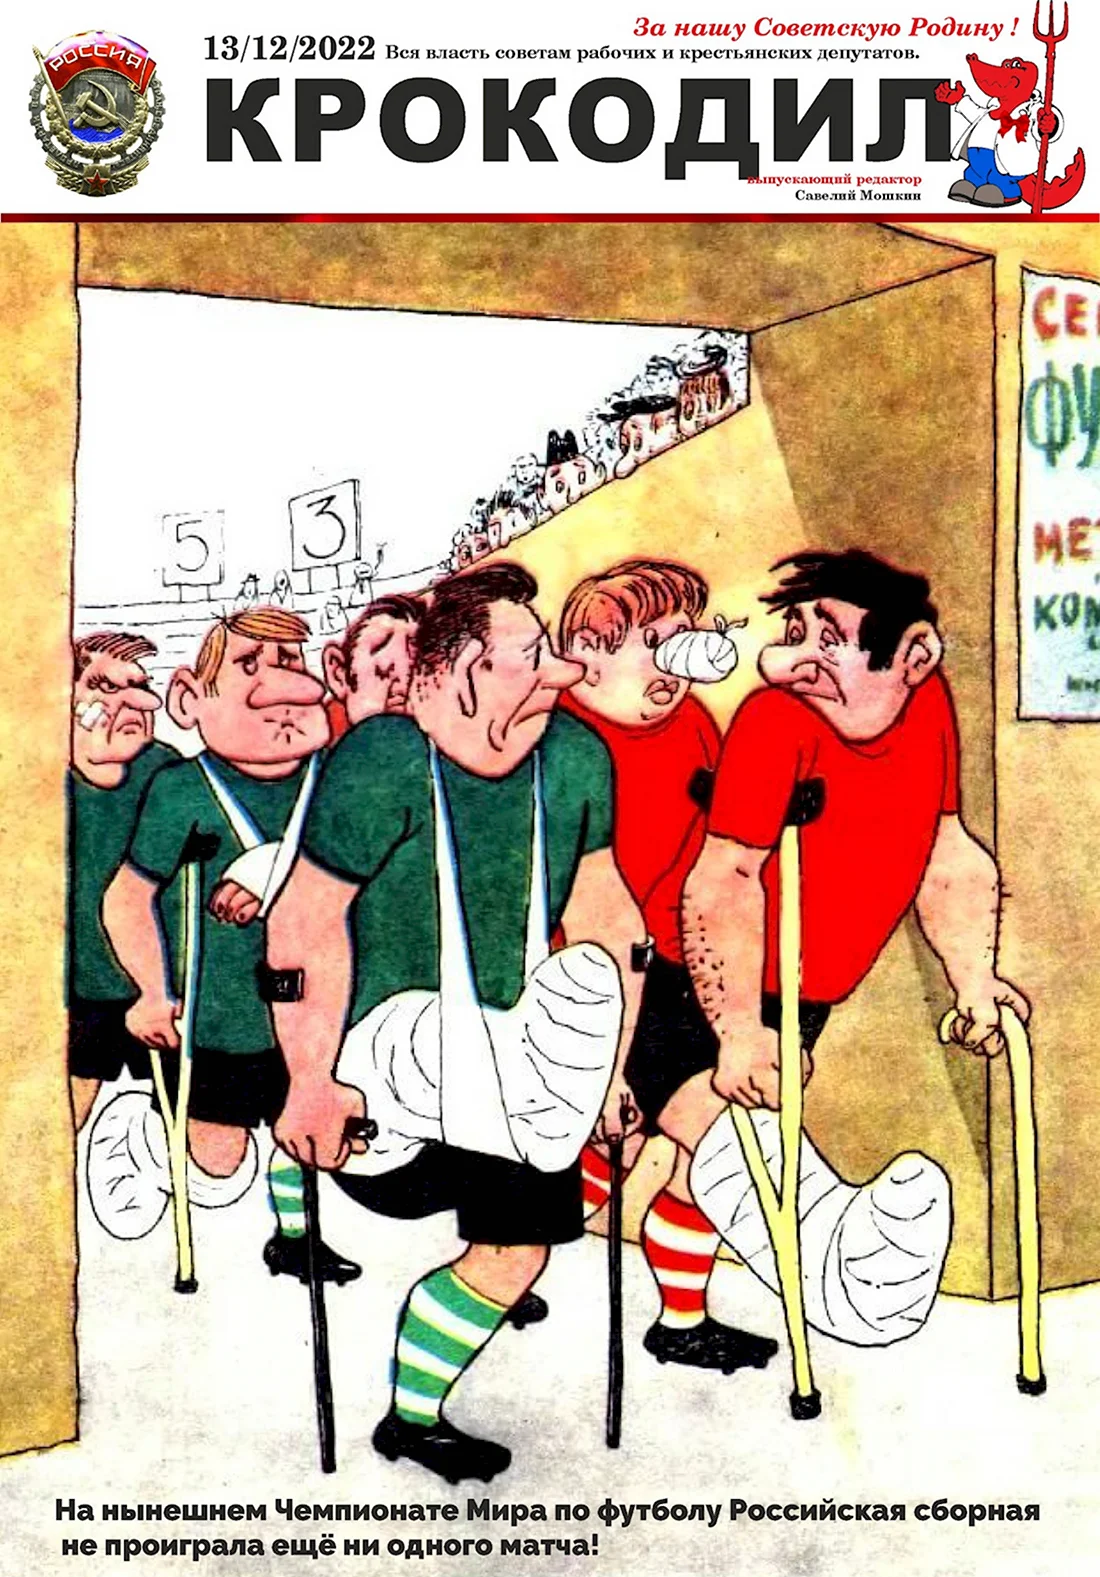 Футбольные советские карикатуры. Анекдот в картинке